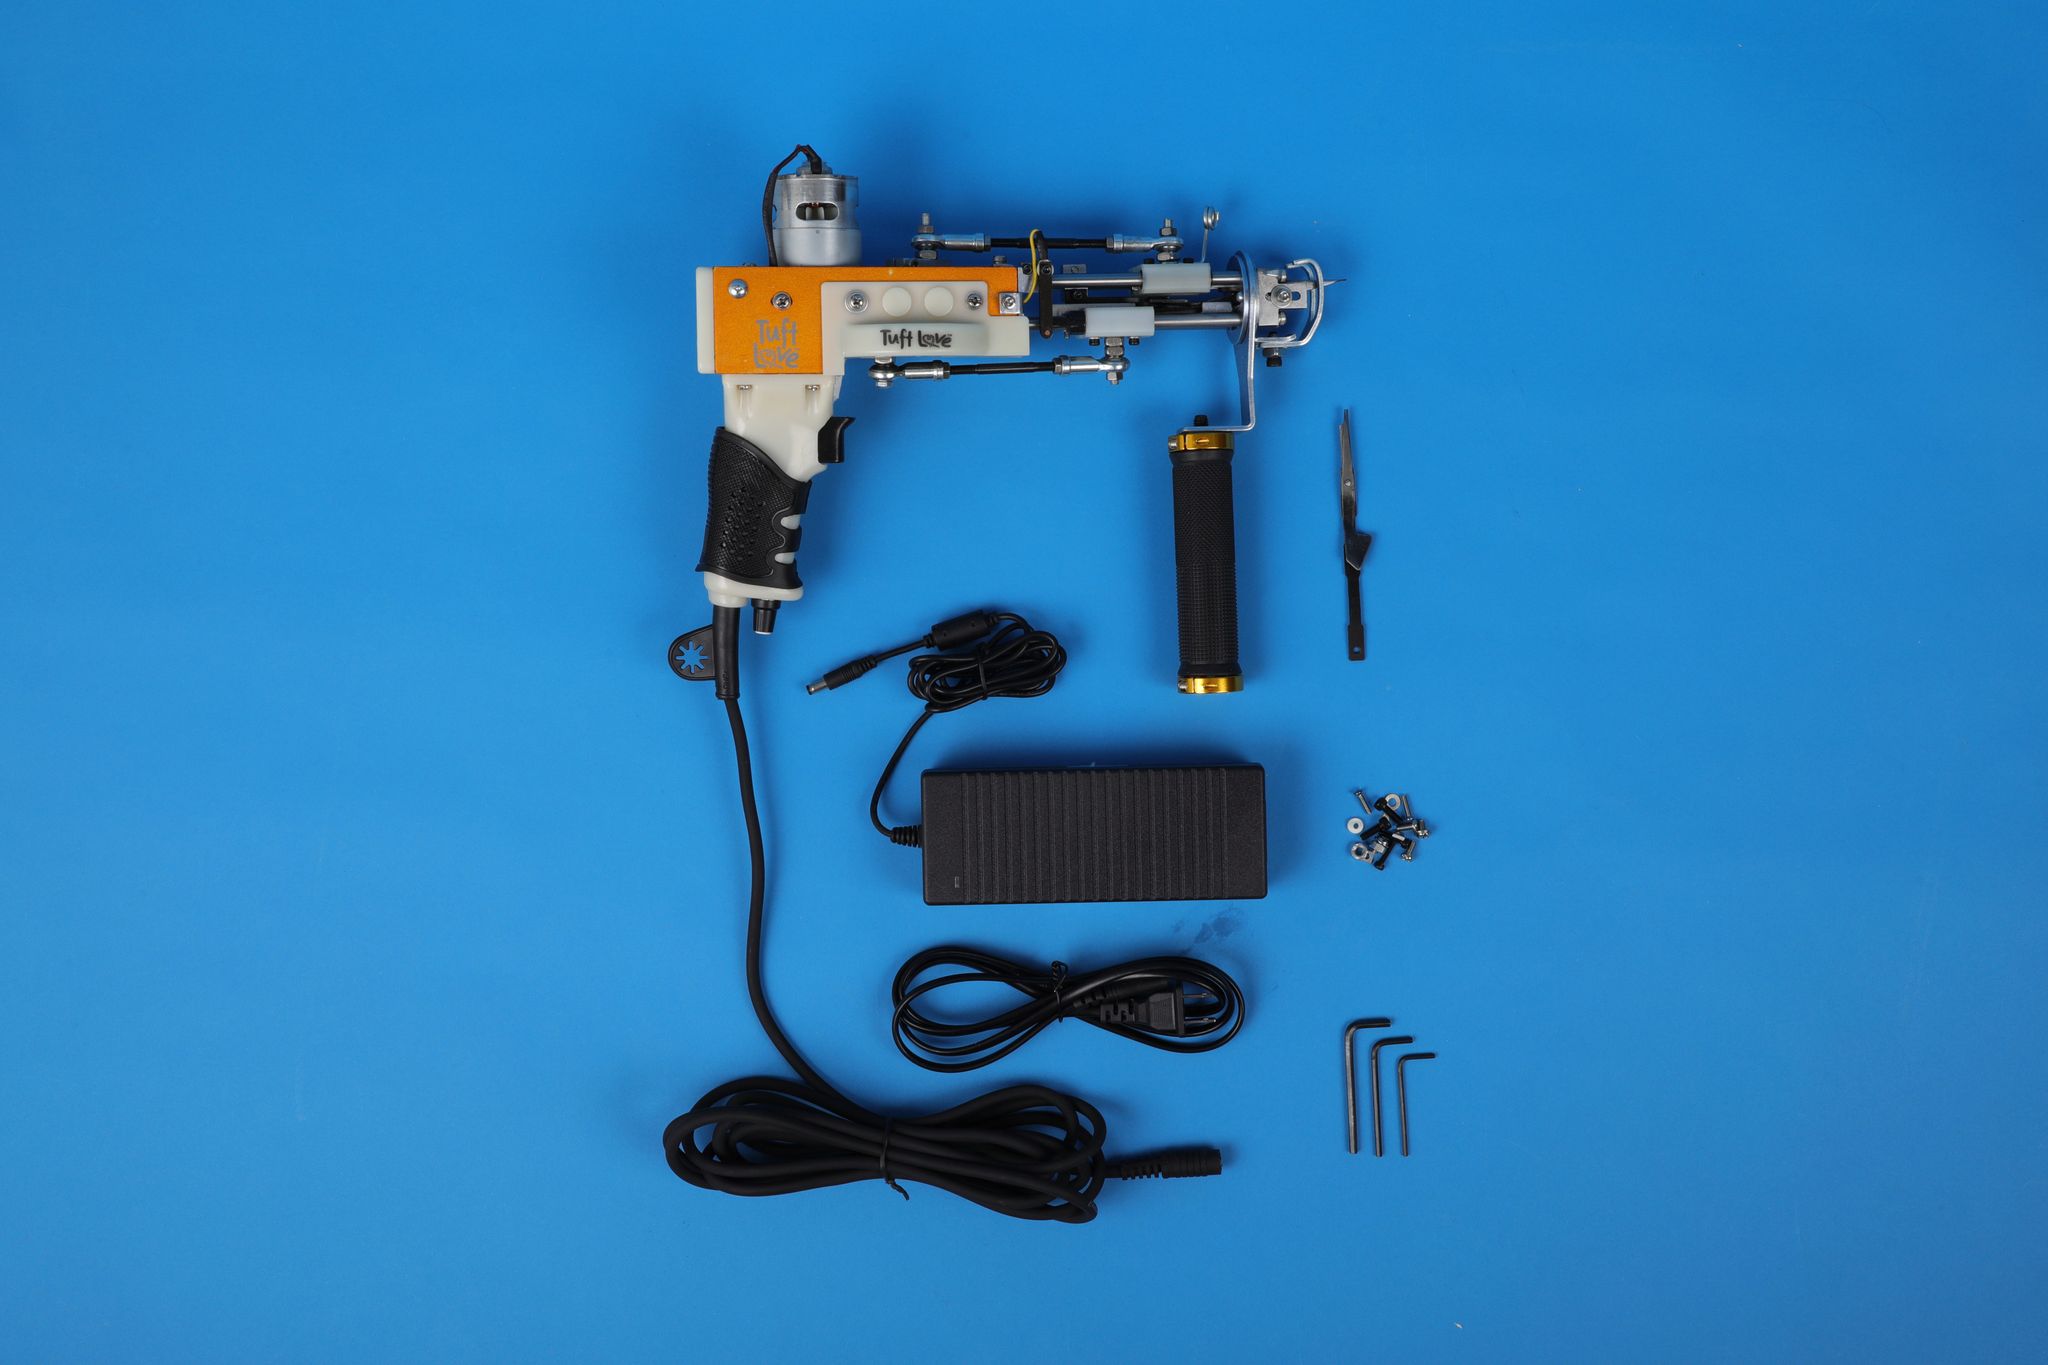 Rug Maker Golden Tufting Starter Kit For beginners & professional –  NakshCarpets